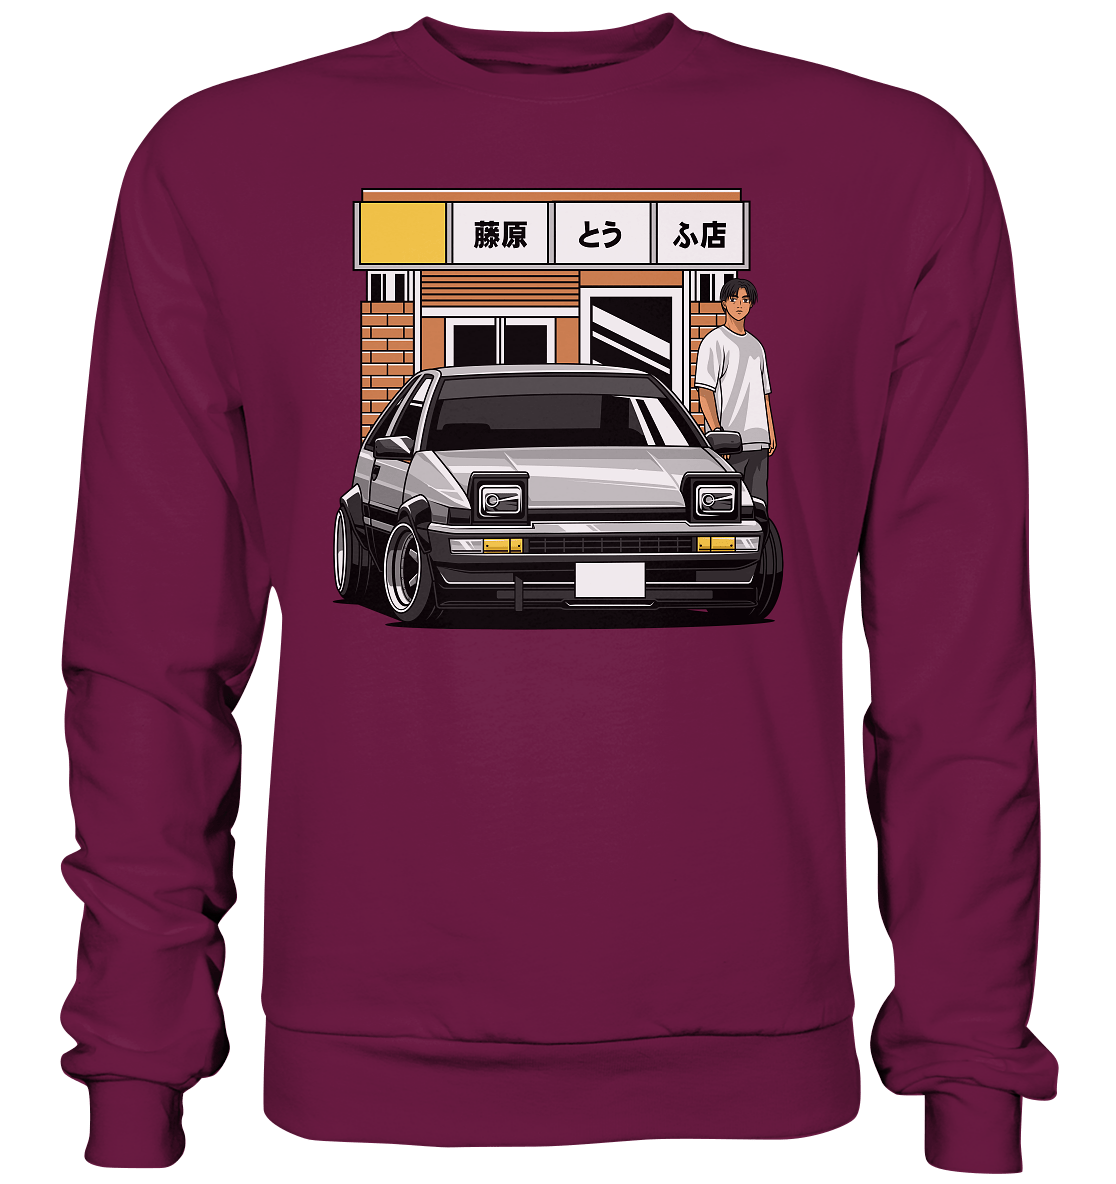 Tofu AE86 - Premium Sweatshirt - MotoMerch.de